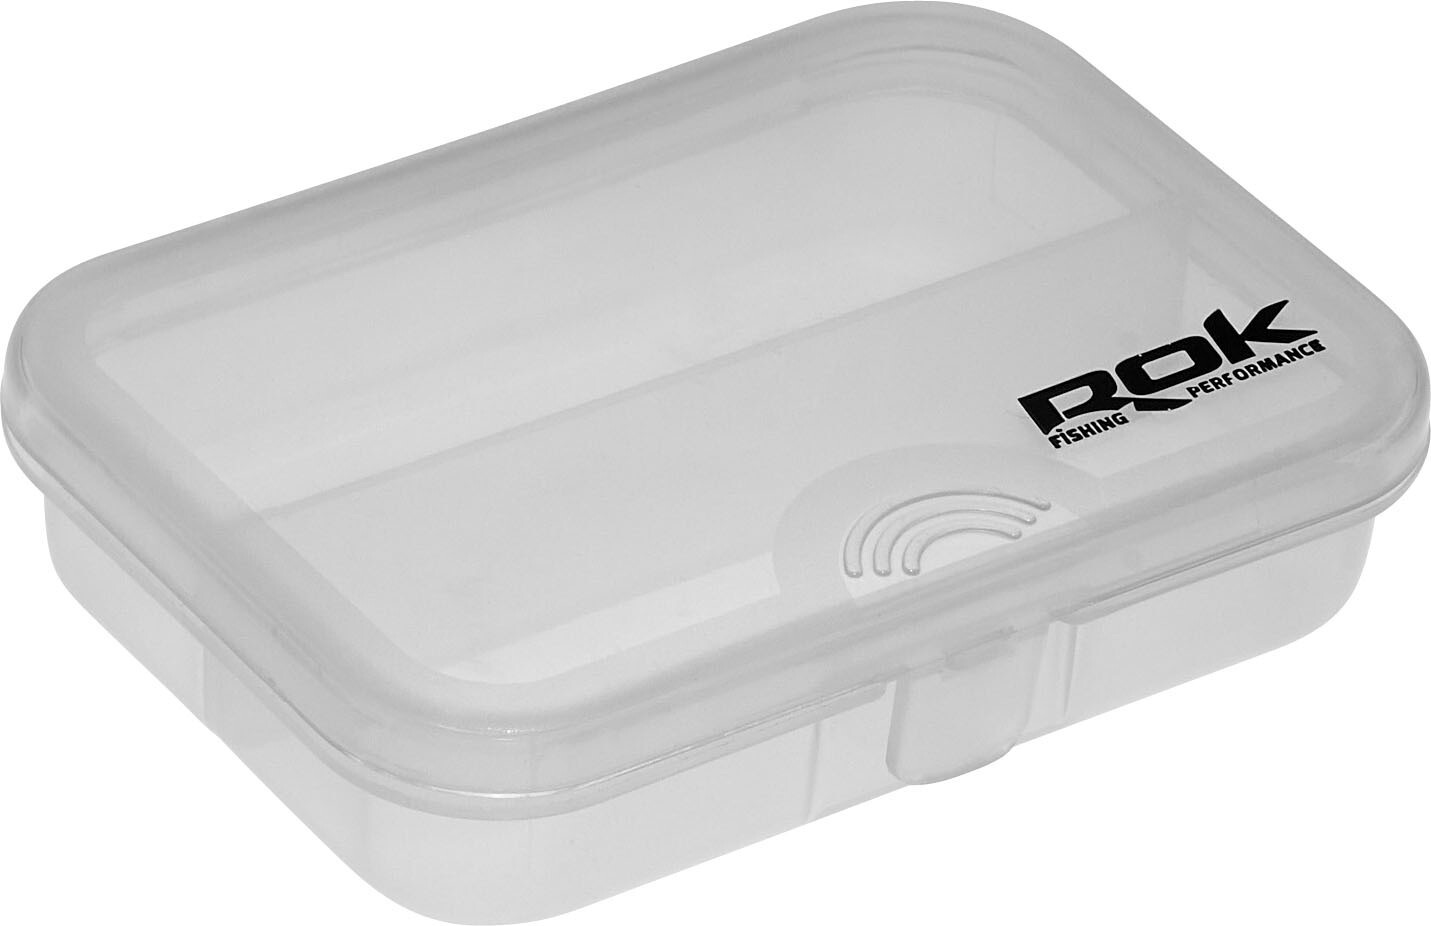 ROK STORAGE BOX XS302 - hosszában osztott mini tároló doboz - 9,1 cm x 6,6 cm x 2,2 cm